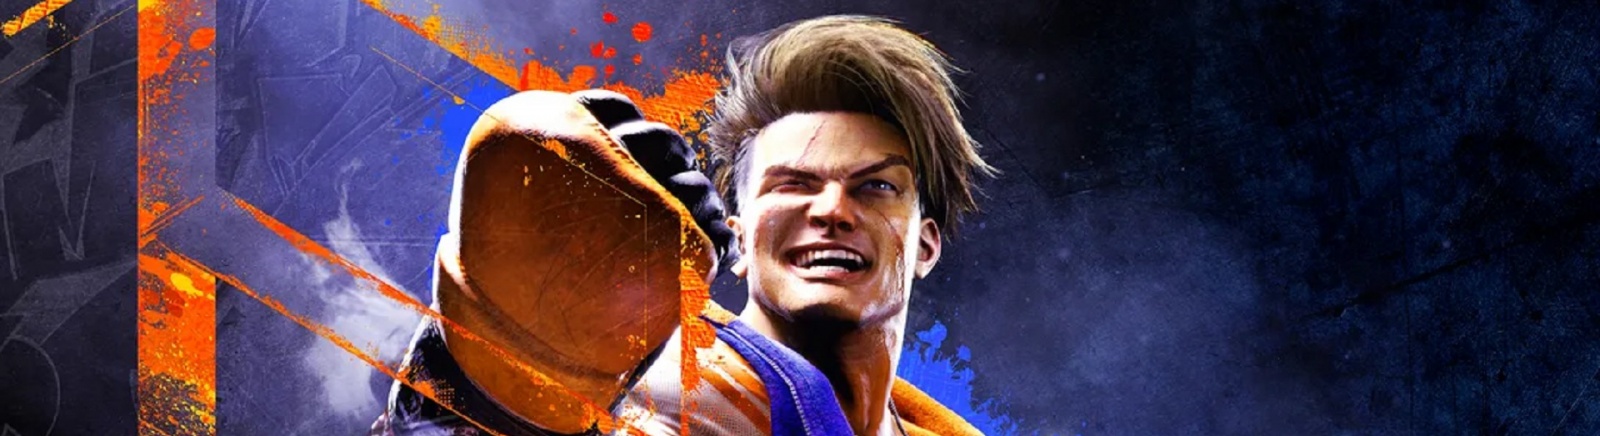 Дата выхода Street Fighter 6 (Стрит Файтер 6)  на PC, PS5 и Xbox Series X/S в России и во всем мире